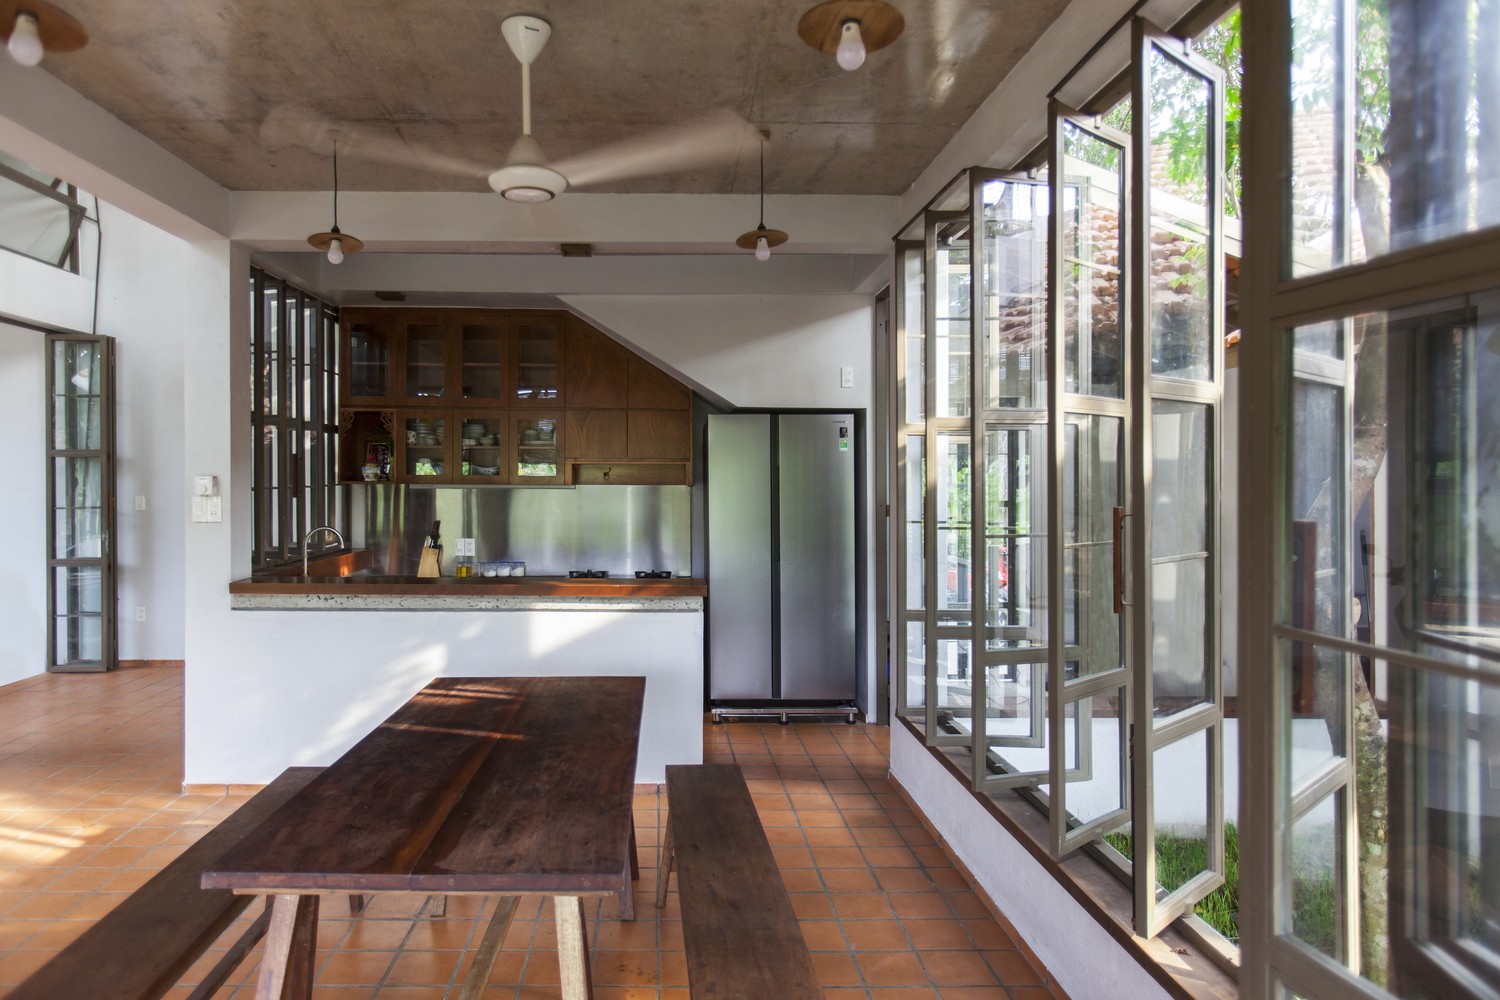 

Phòng bếp nhỏ tiện dụng với gam màu gỗ làm chủ đạo
